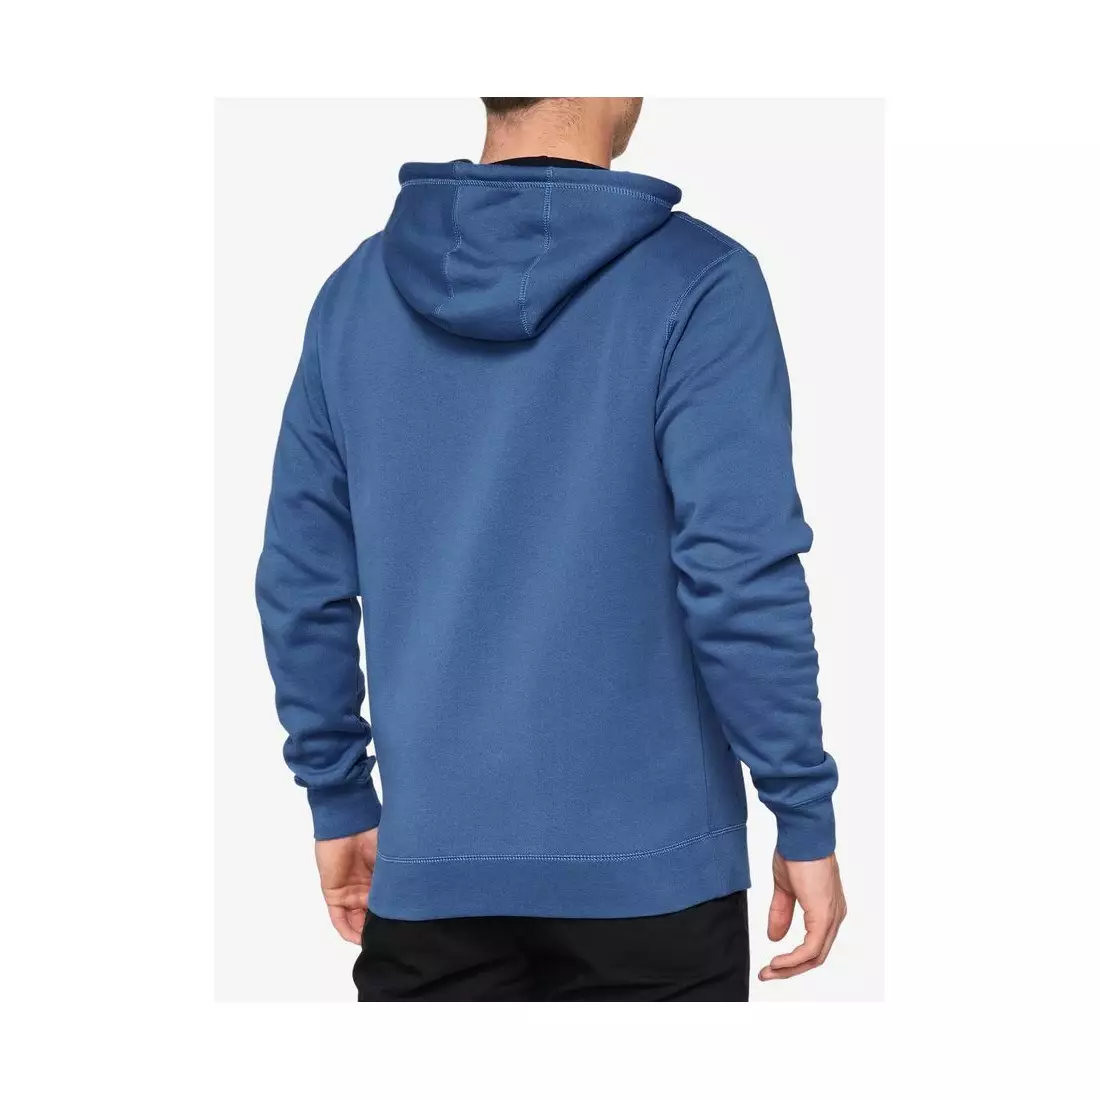 100% men's hoodie BURST Hooded Pullover Sweatshirt federal blue STO-36039-400-11